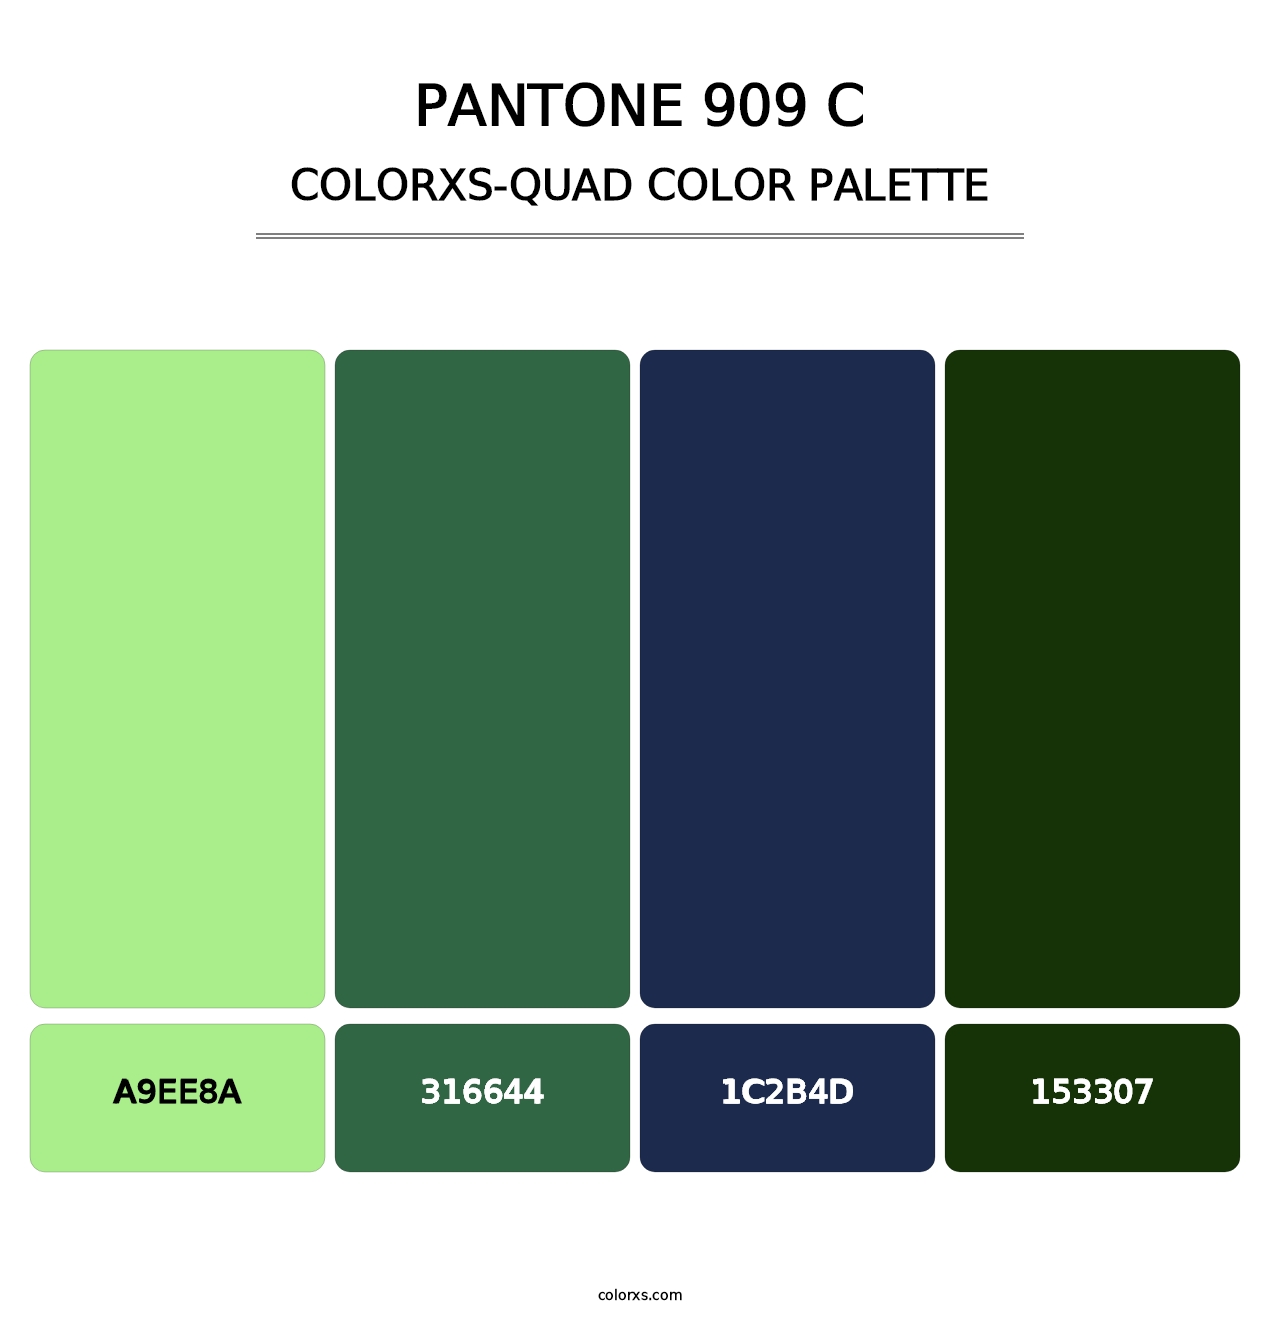 PANTONE 909 C - Colorxs Quad Palette